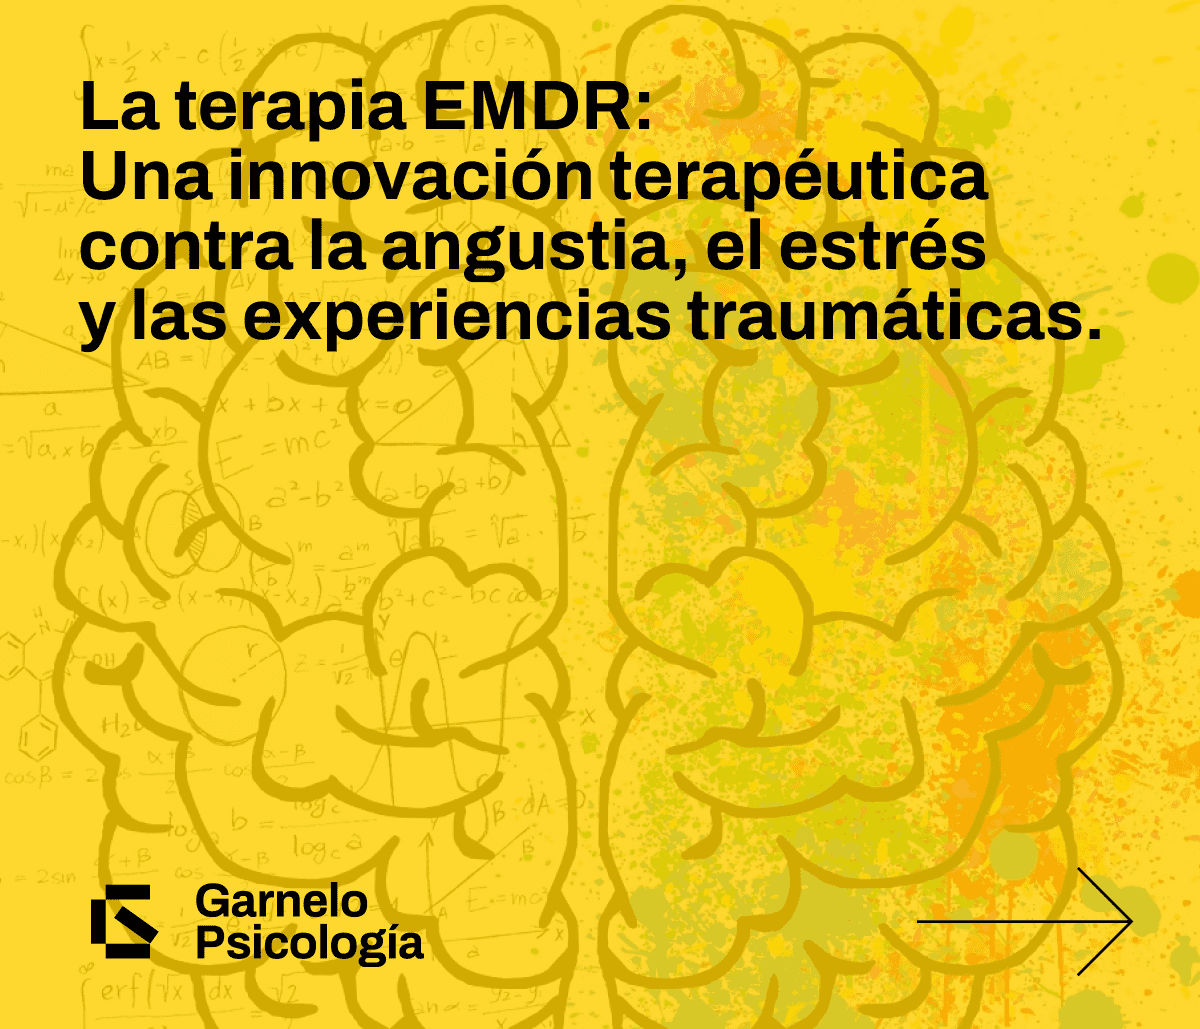 La terapia EMDR: Una innovación terapéutica